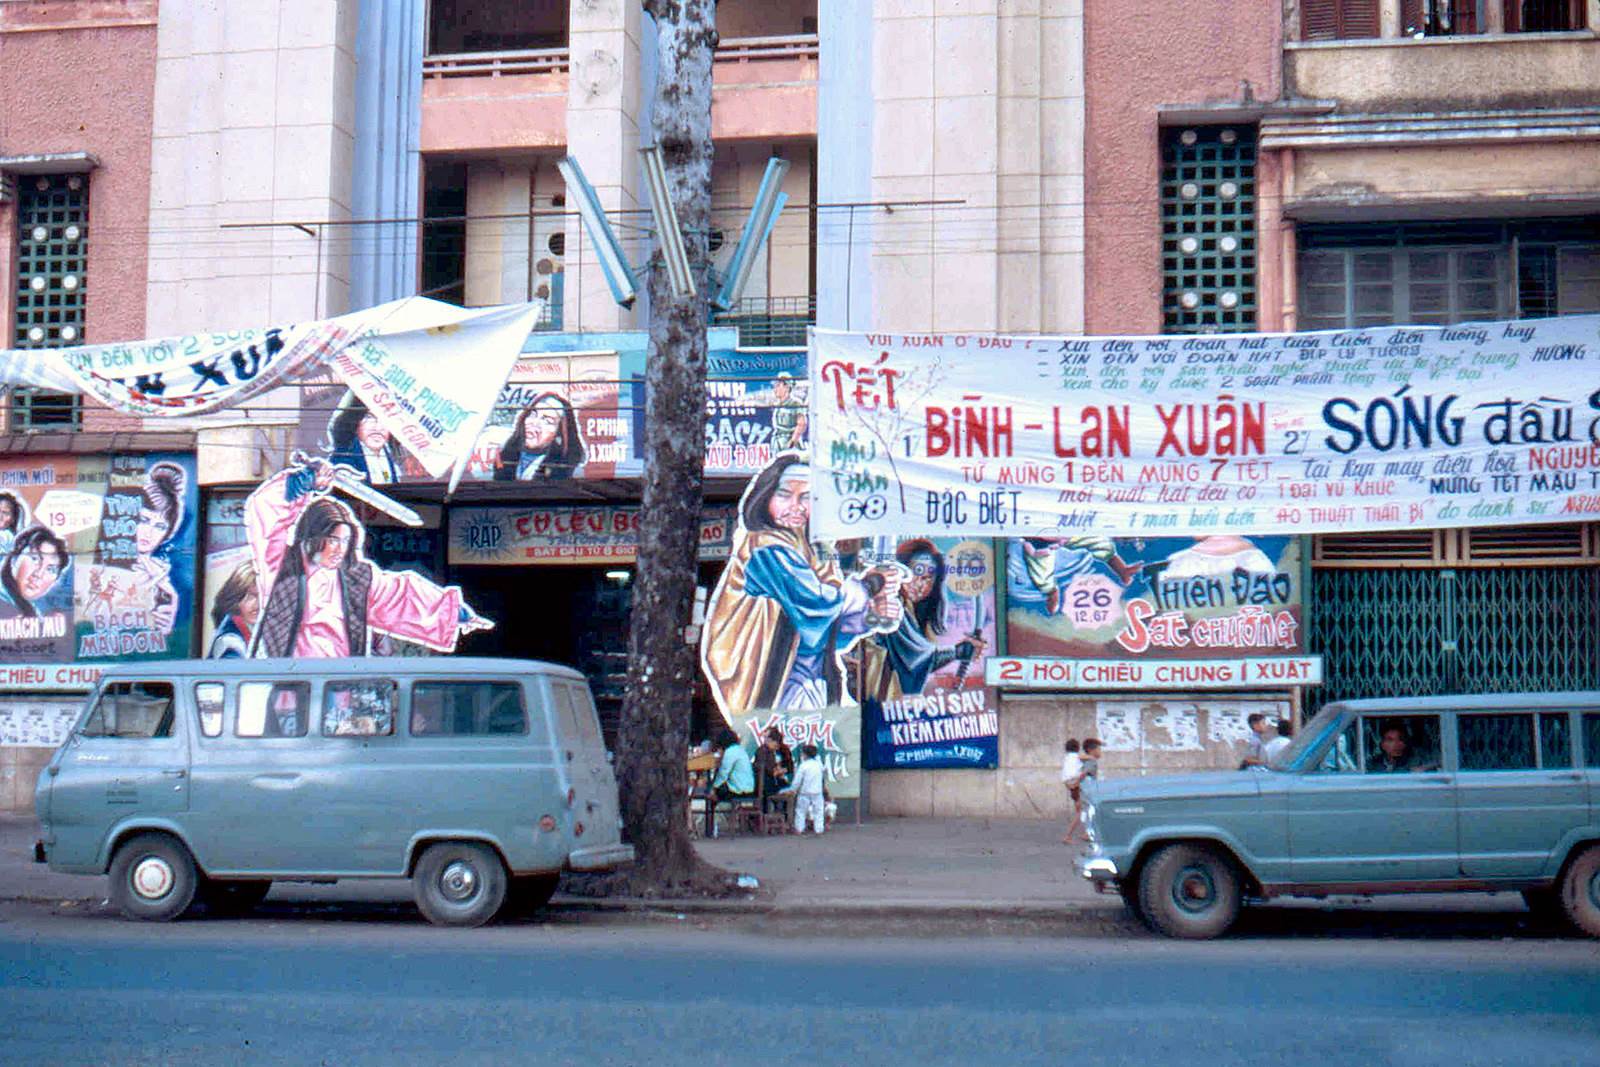 SAIGON trước Tết Mậu Thân 1968 - Rạp Nguyễn Văn Hảo đường Trần Hưng Đạo - Photo by Ed Sizer